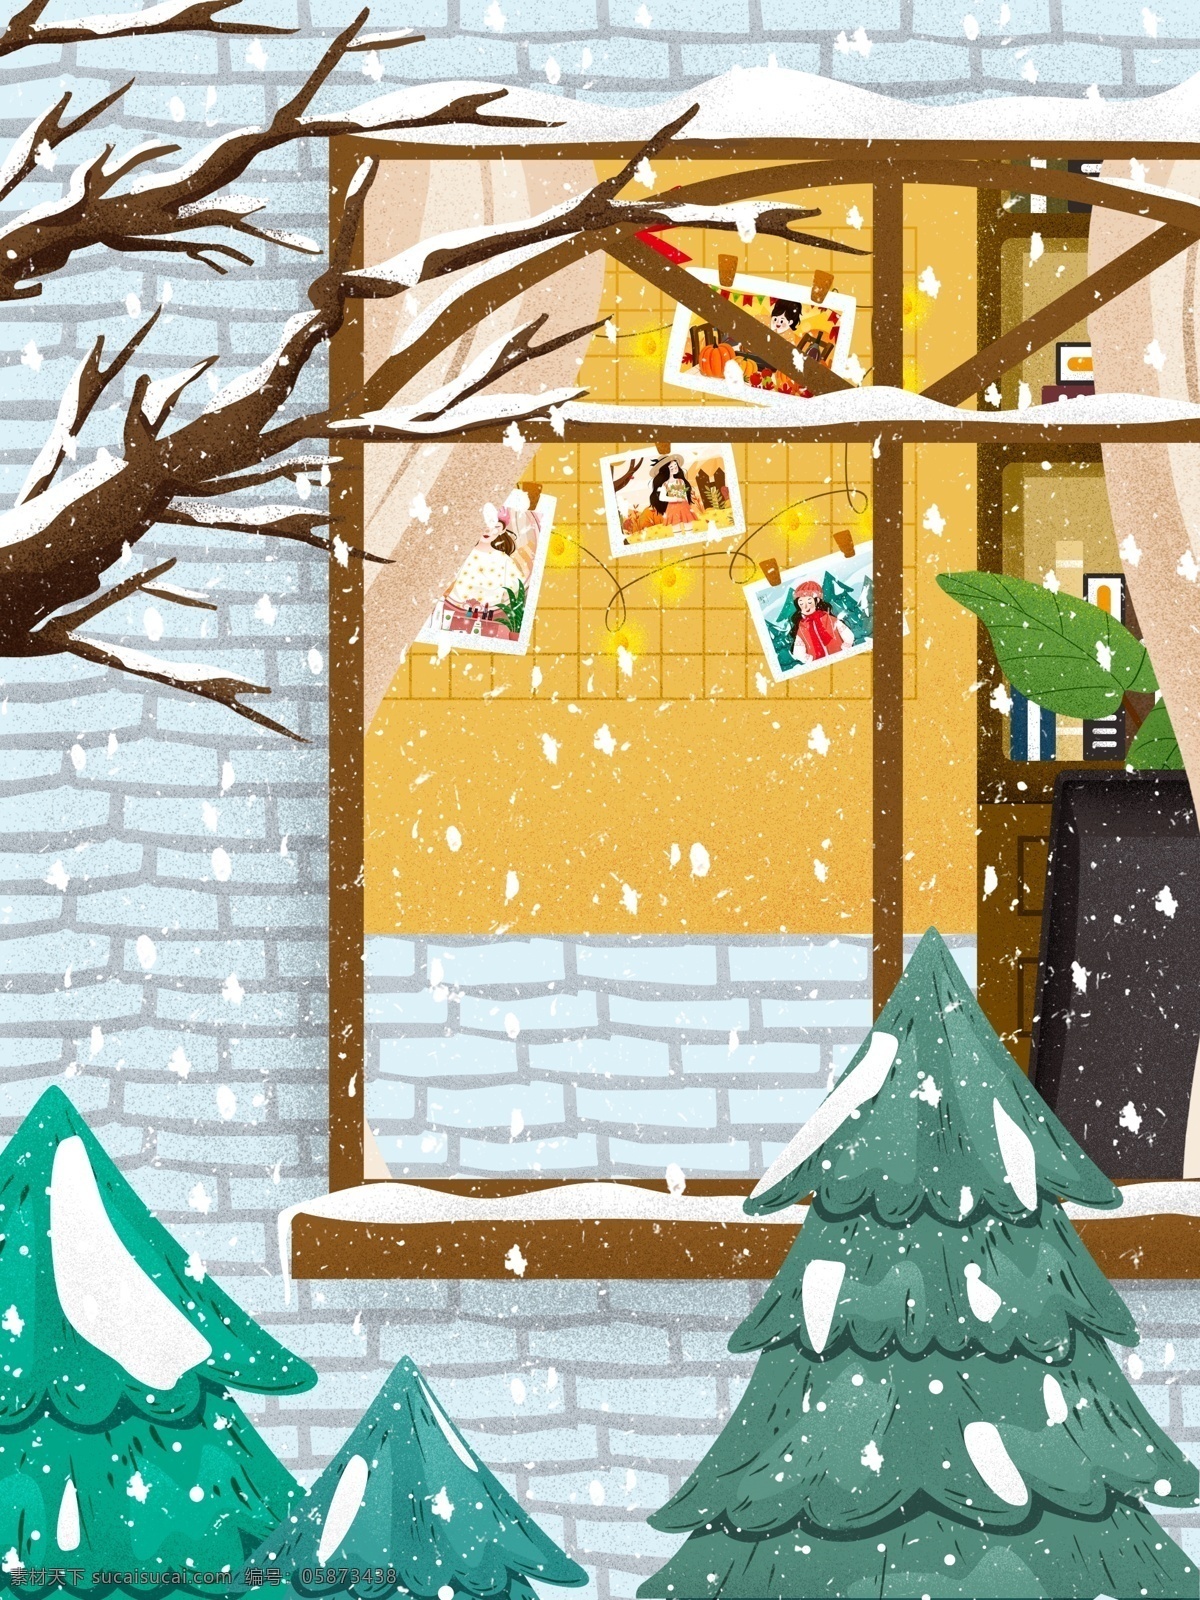 清新 浪漫 圣诞节 房屋 背景 可爱 彩绘背景 冬季 冬至 平安夜 小雪 小雪背景 传统节气